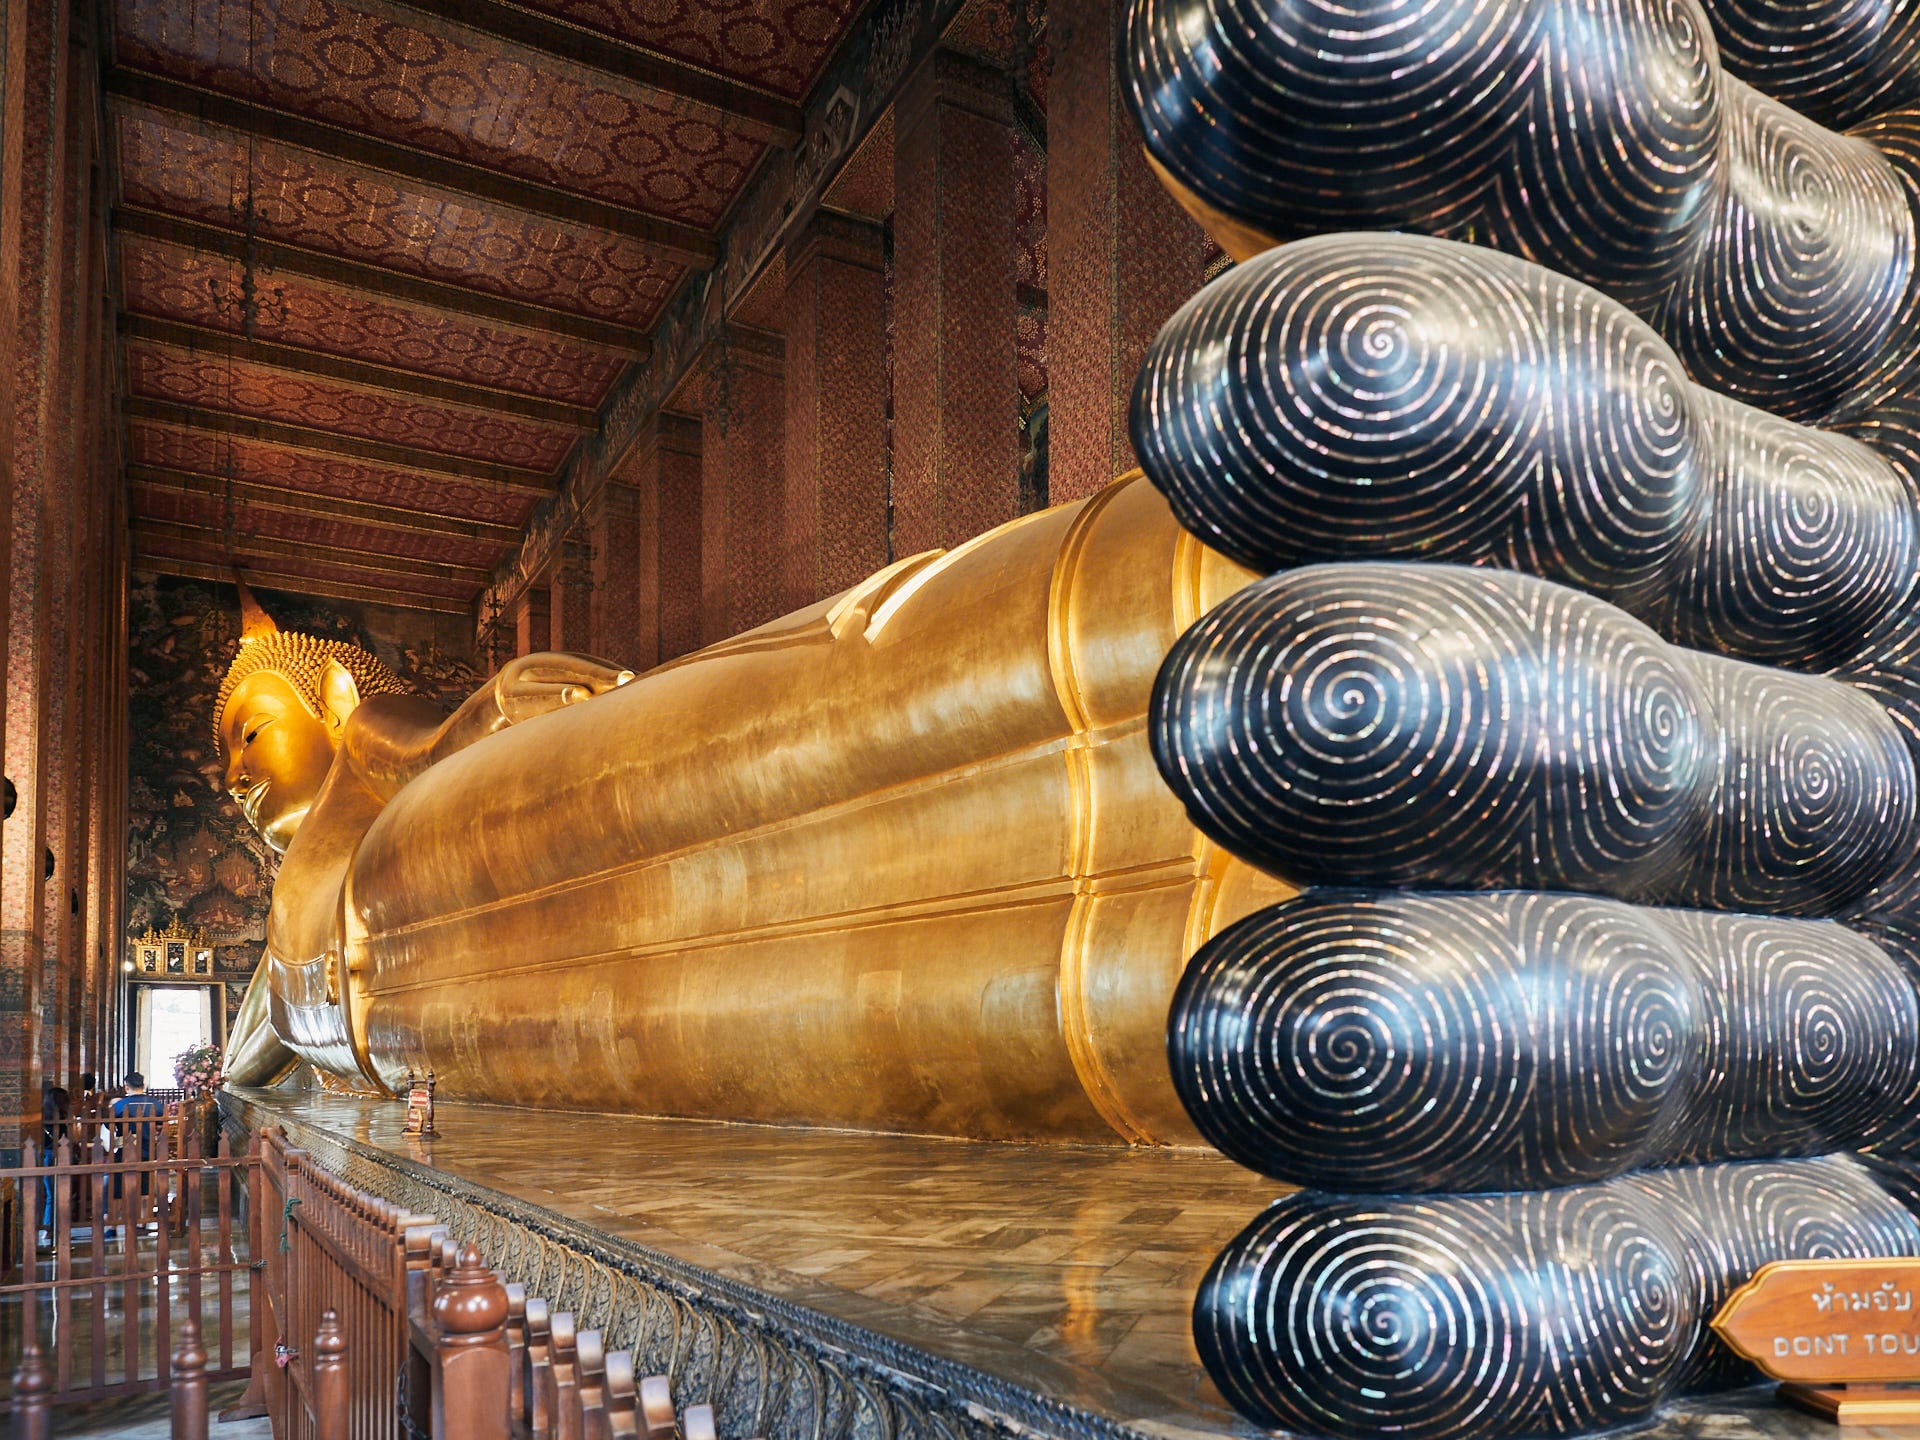 Świątynie w Bangkoku, które warto zwiedzić
Tajlandia plan podróży na 14 dni 